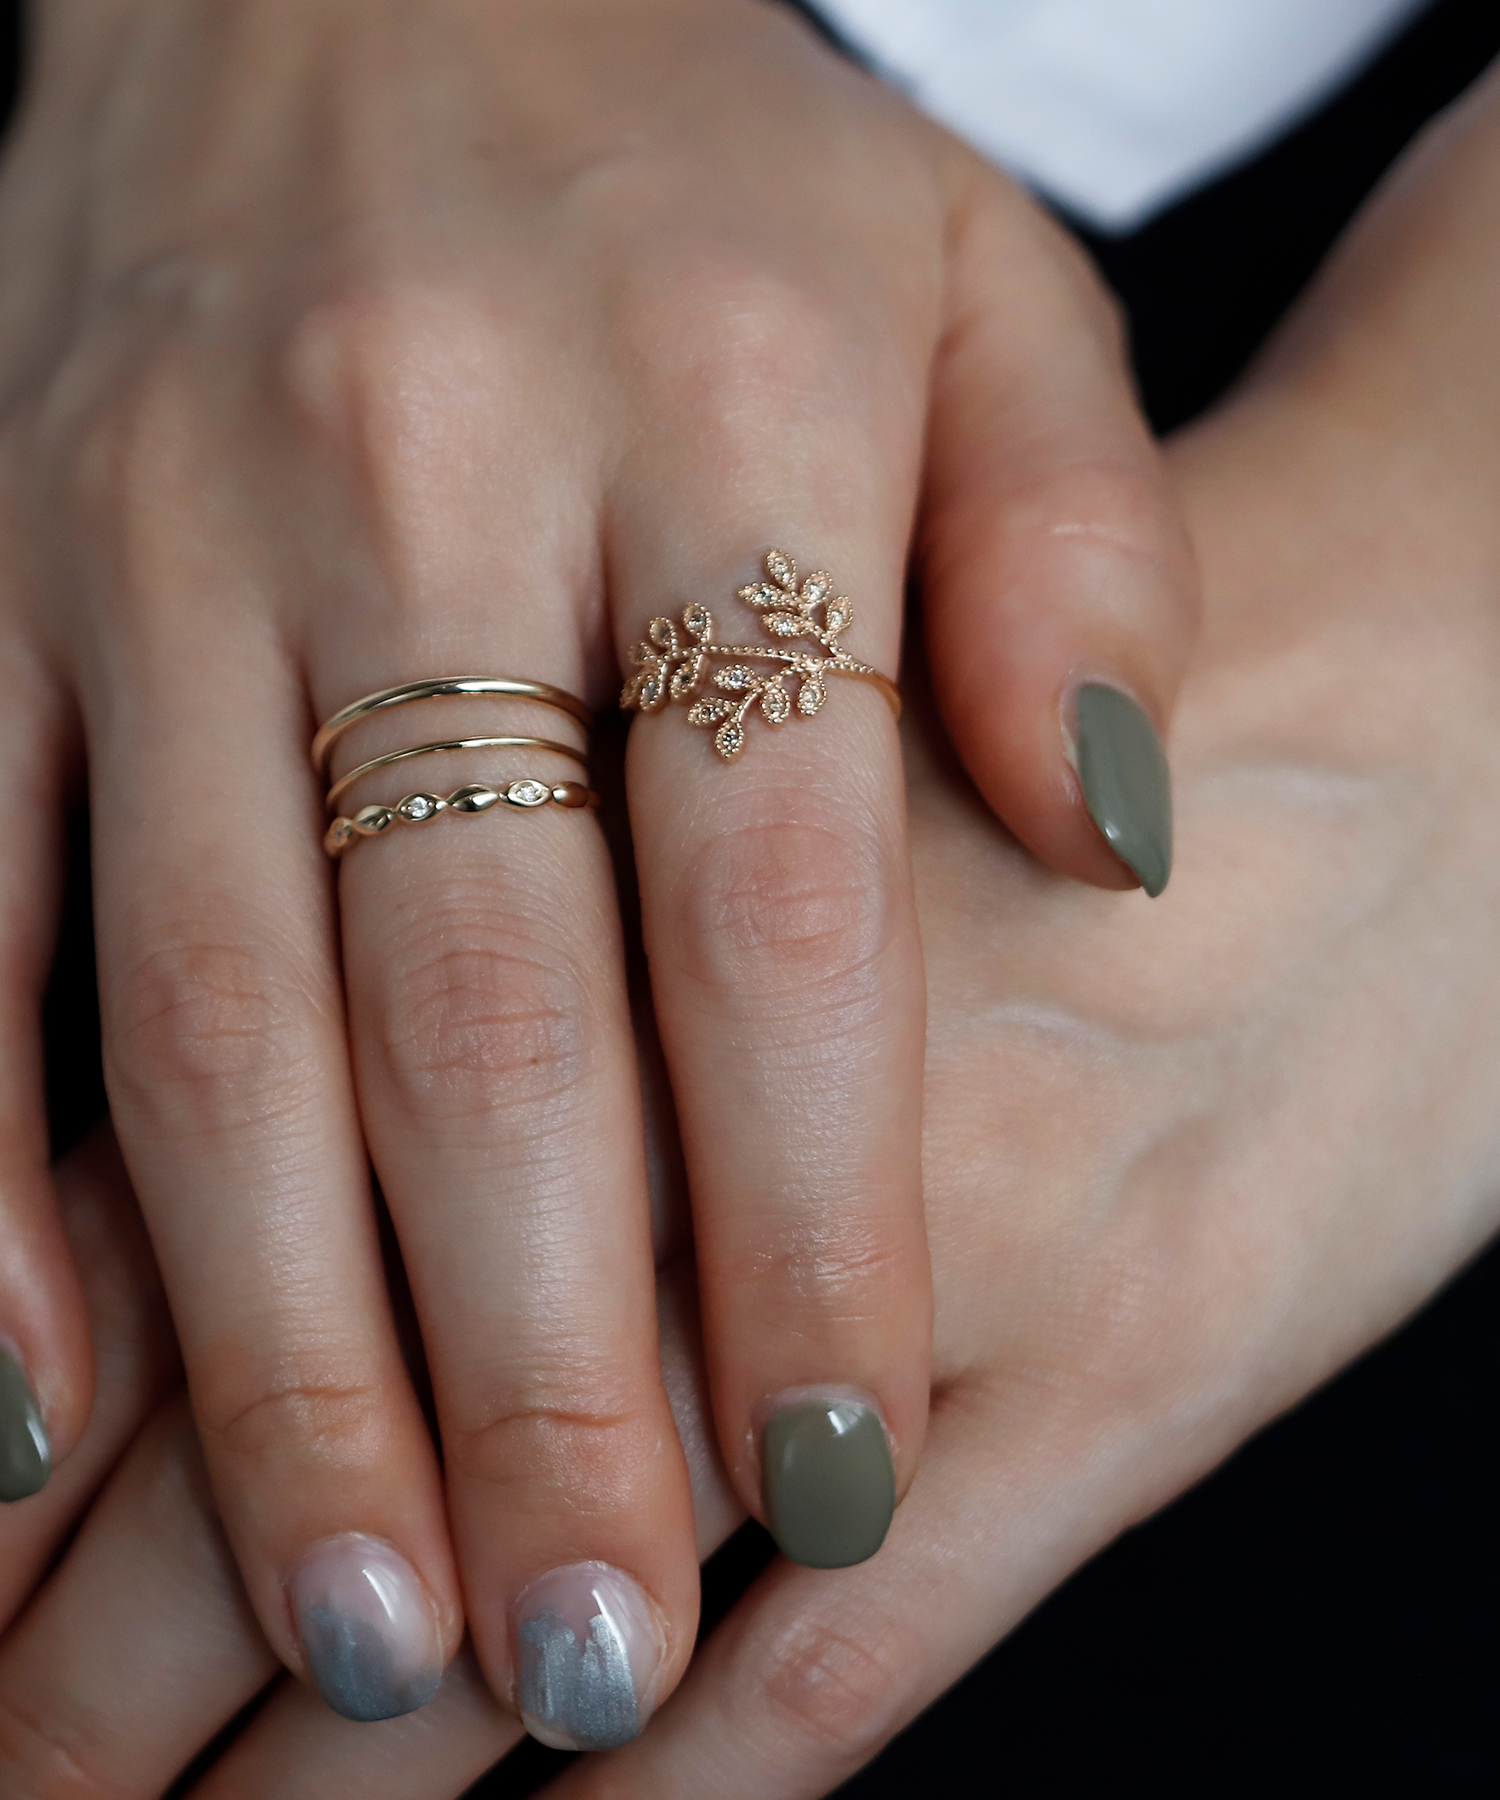 人気急上昇 ③ネイルリング パールリボン ジュエリー ネイルアート 爪の指輪 チップリング